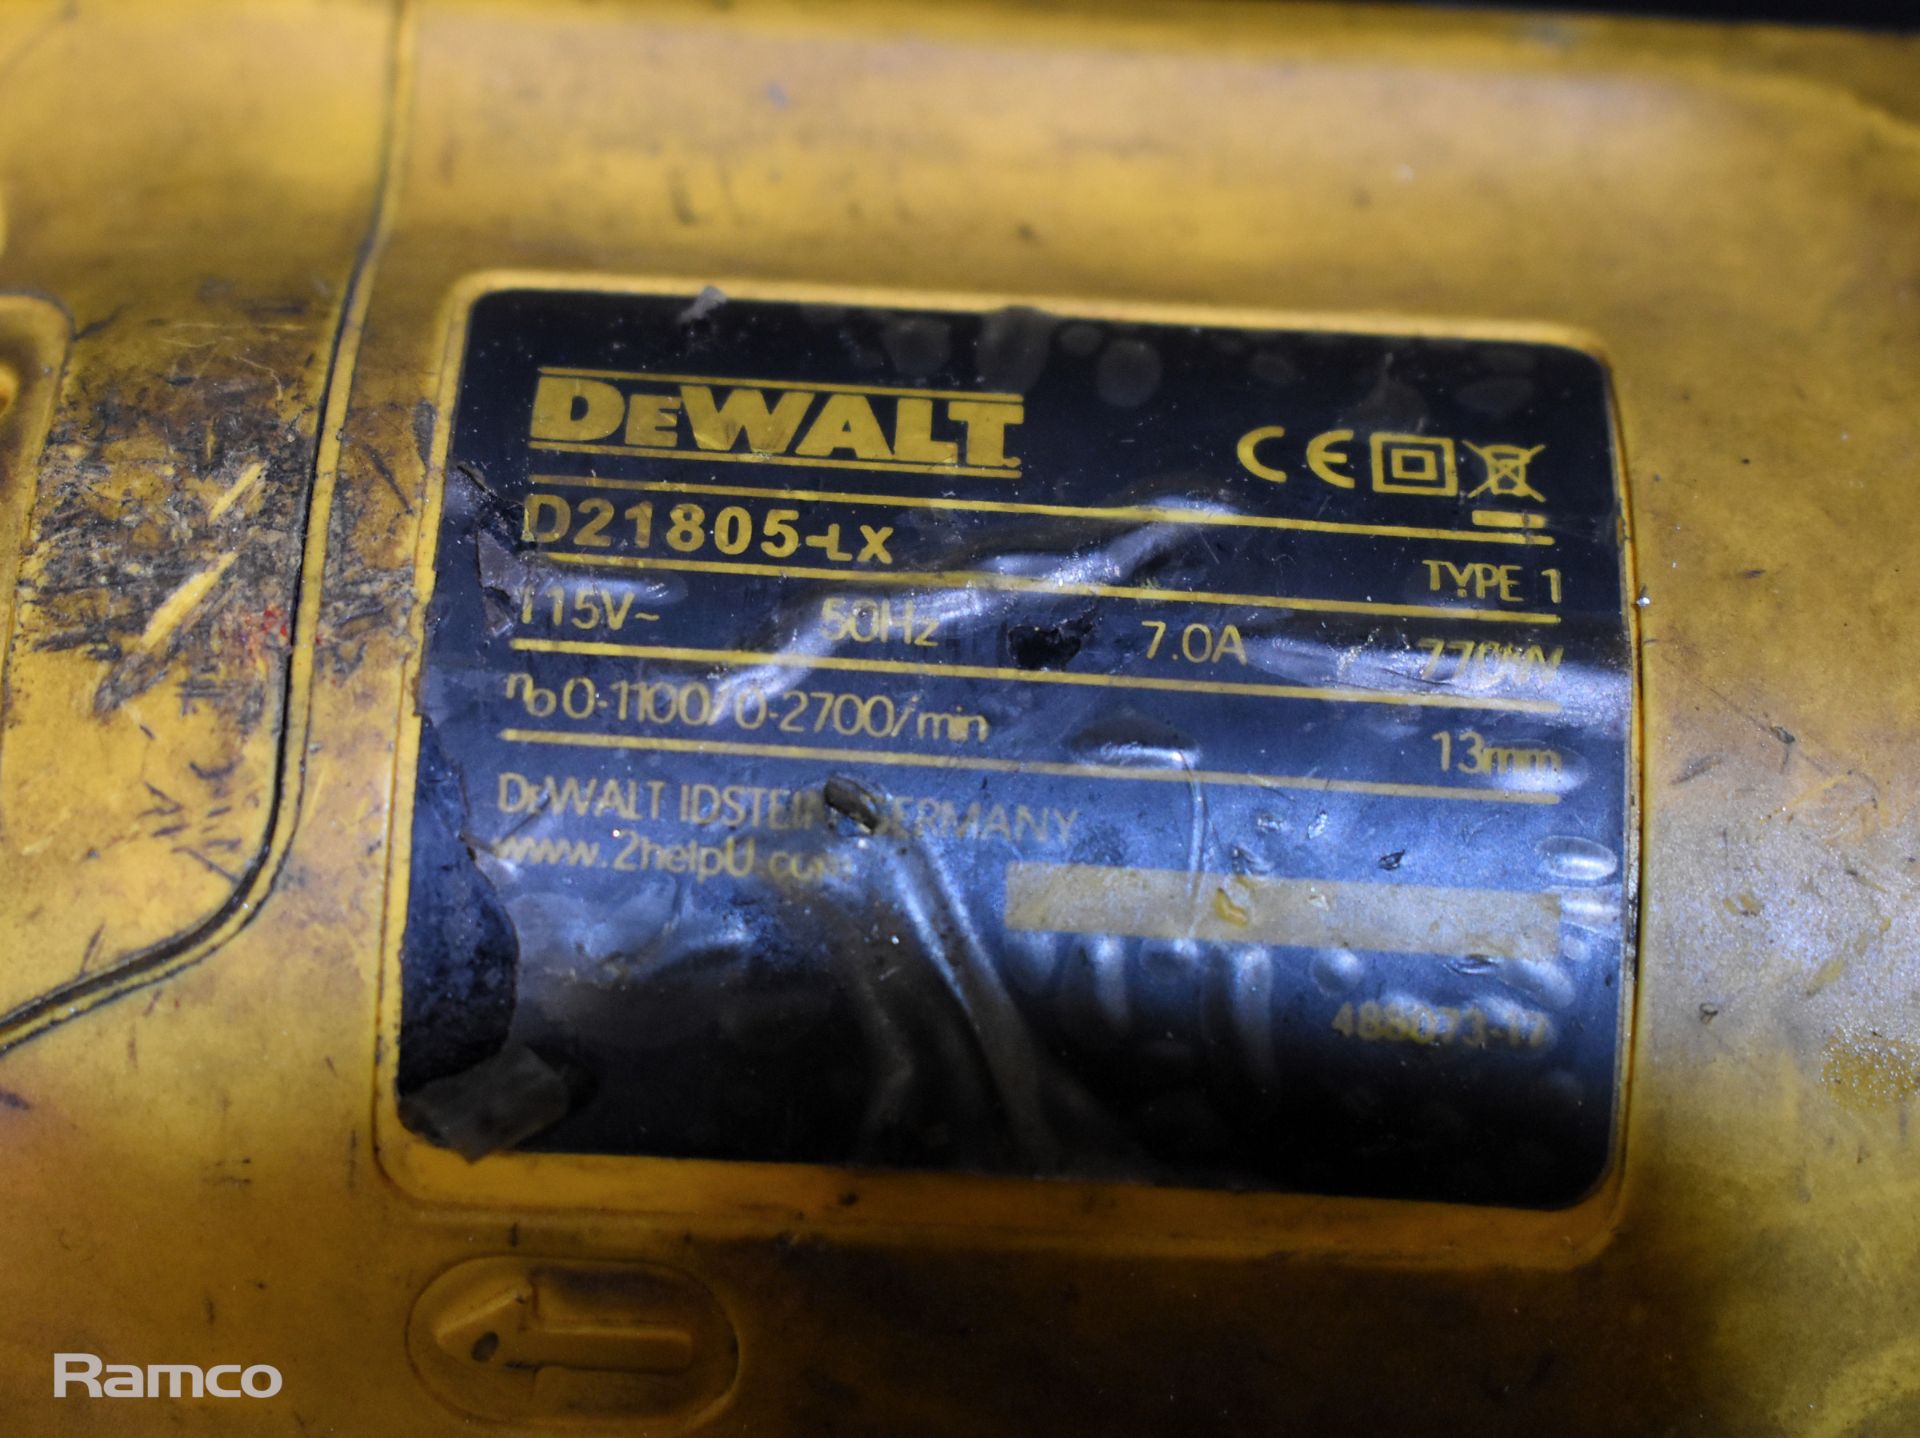 Dewalt D21805-LX 110V electric drill - Image 4 of 5